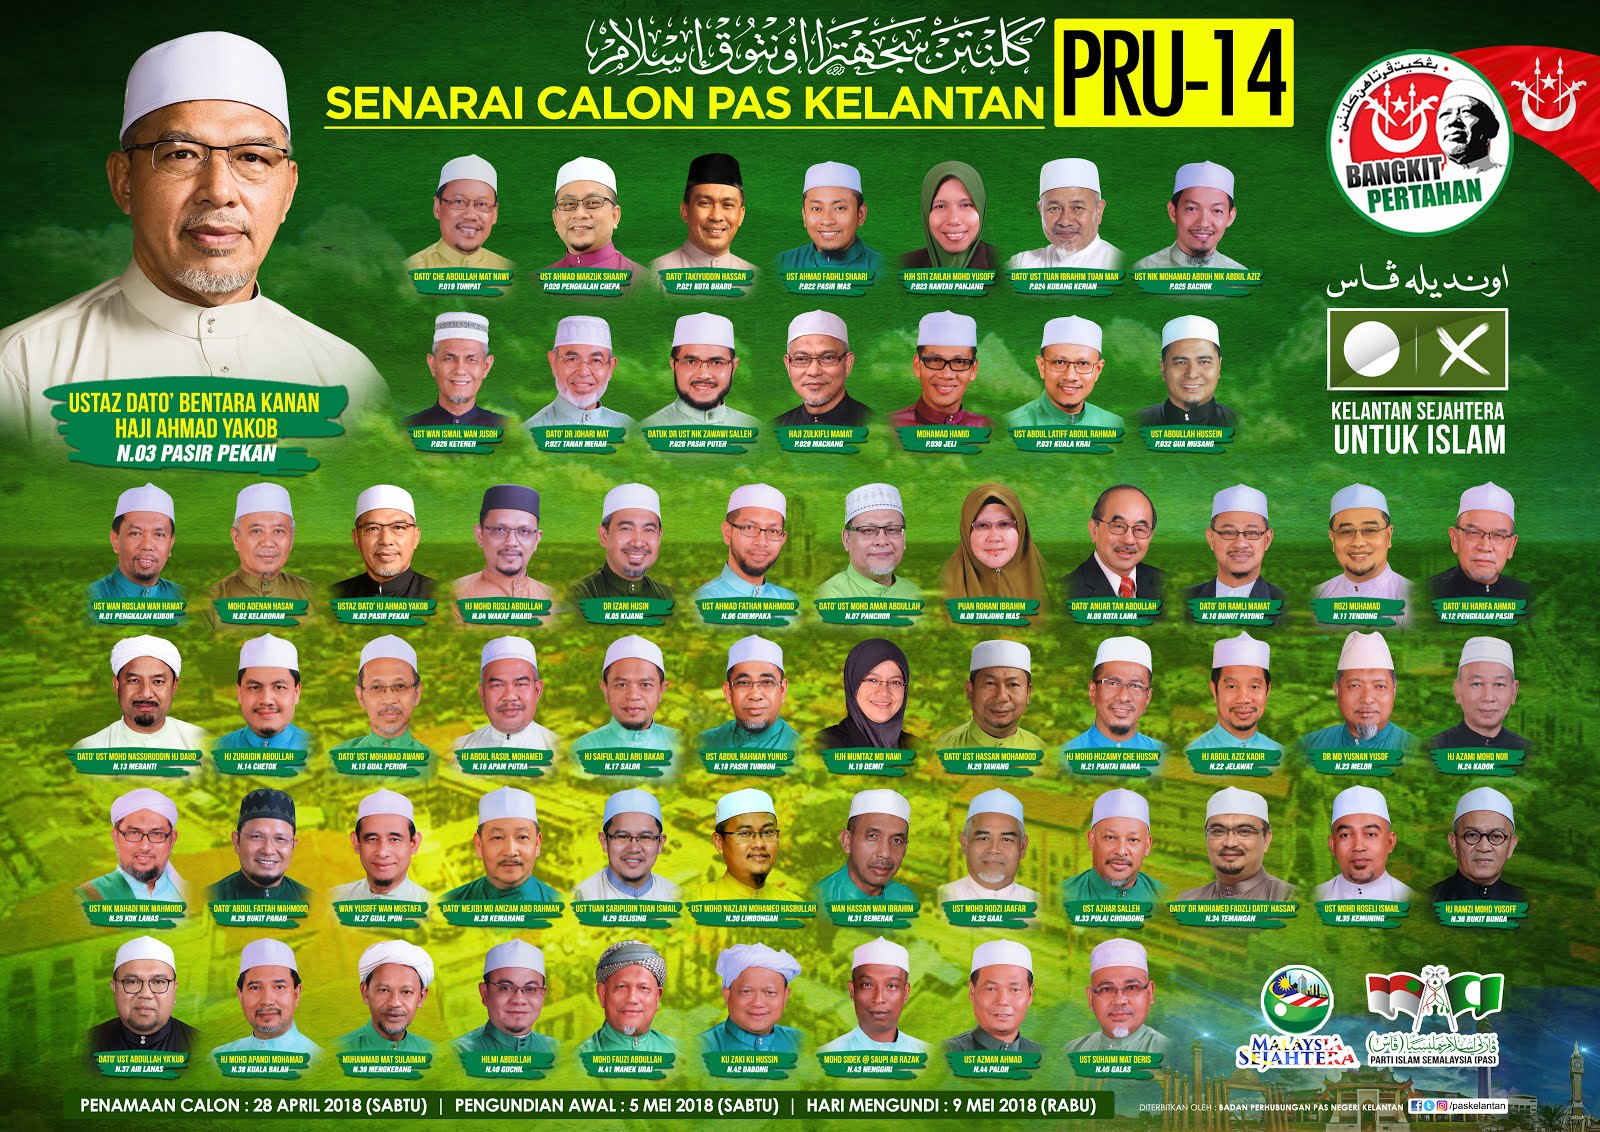 1media My Senarai Calon Pas Kelantan Pru 14